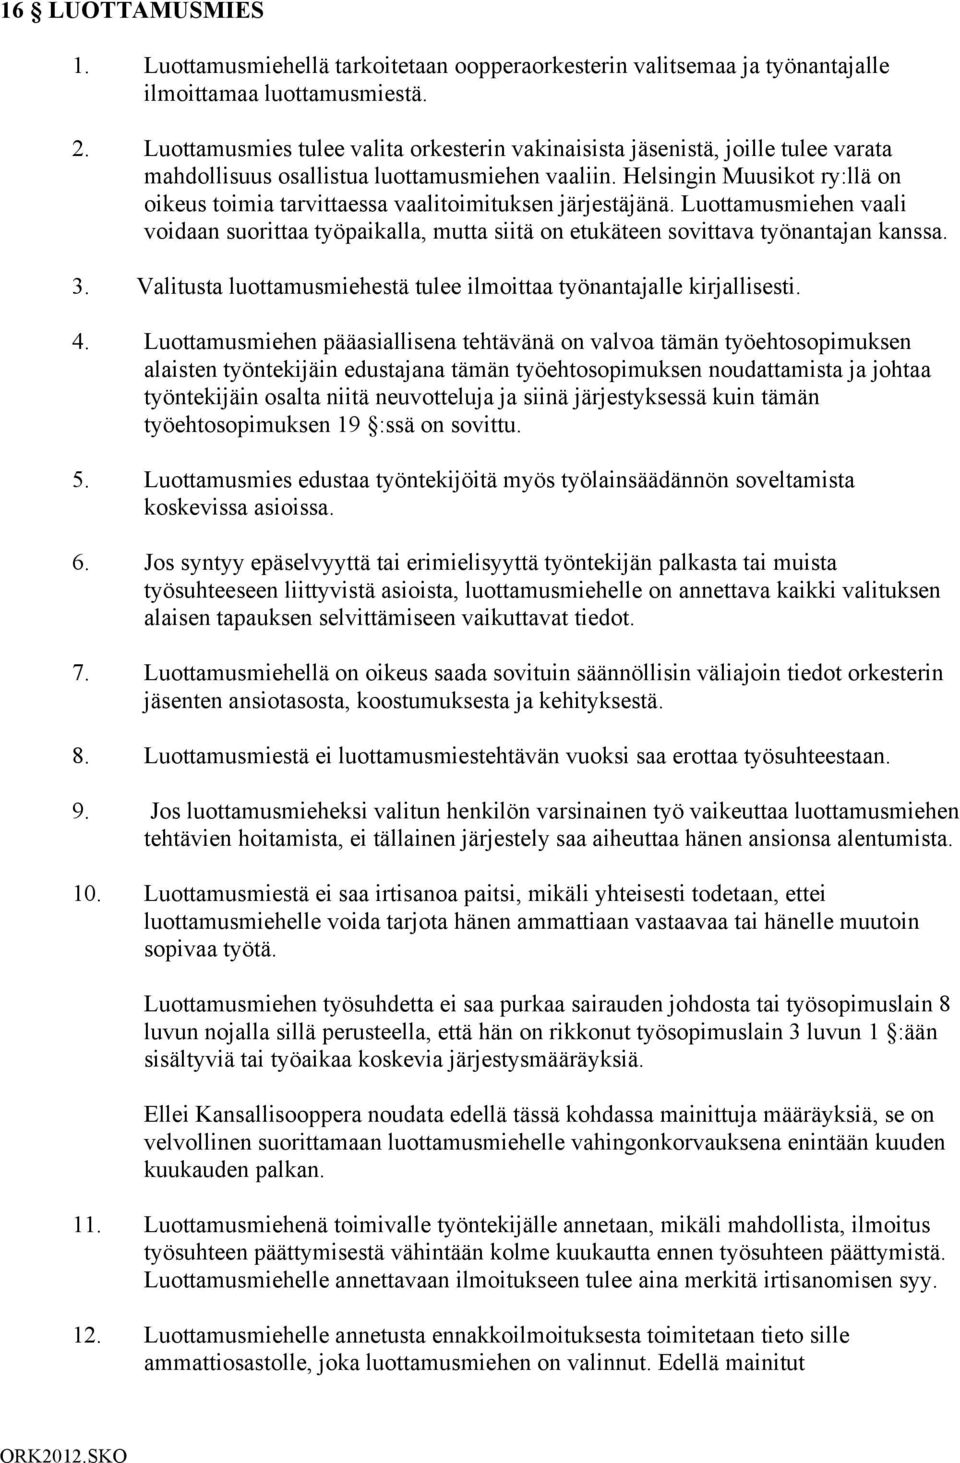 Helsingin Muusikot ry:llä on oikeus toimia tarvittaessa vaalitoimituksen järjestäjänä. Luottamusmiehen vaali voidaan suorittaa työpaikalla, mutta siitä on etukäteen sovittava työnantajan kanssa. 3.